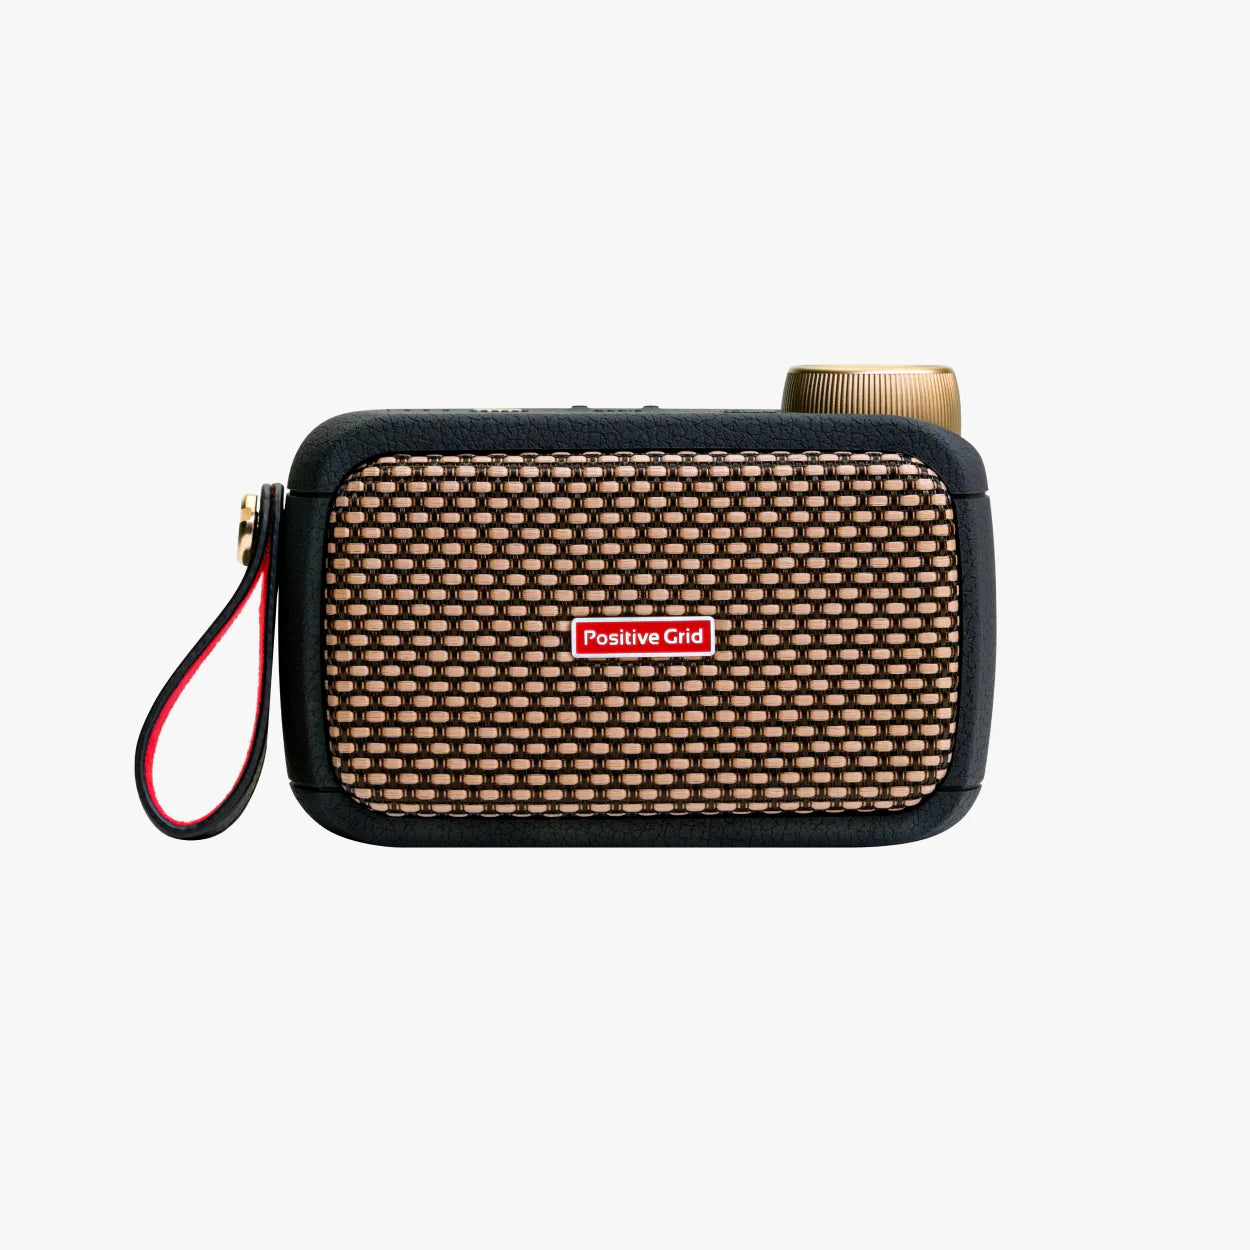 Positive Grid Spark Go Portable Smart Guitar Amp & Bluetooth Speaker Black